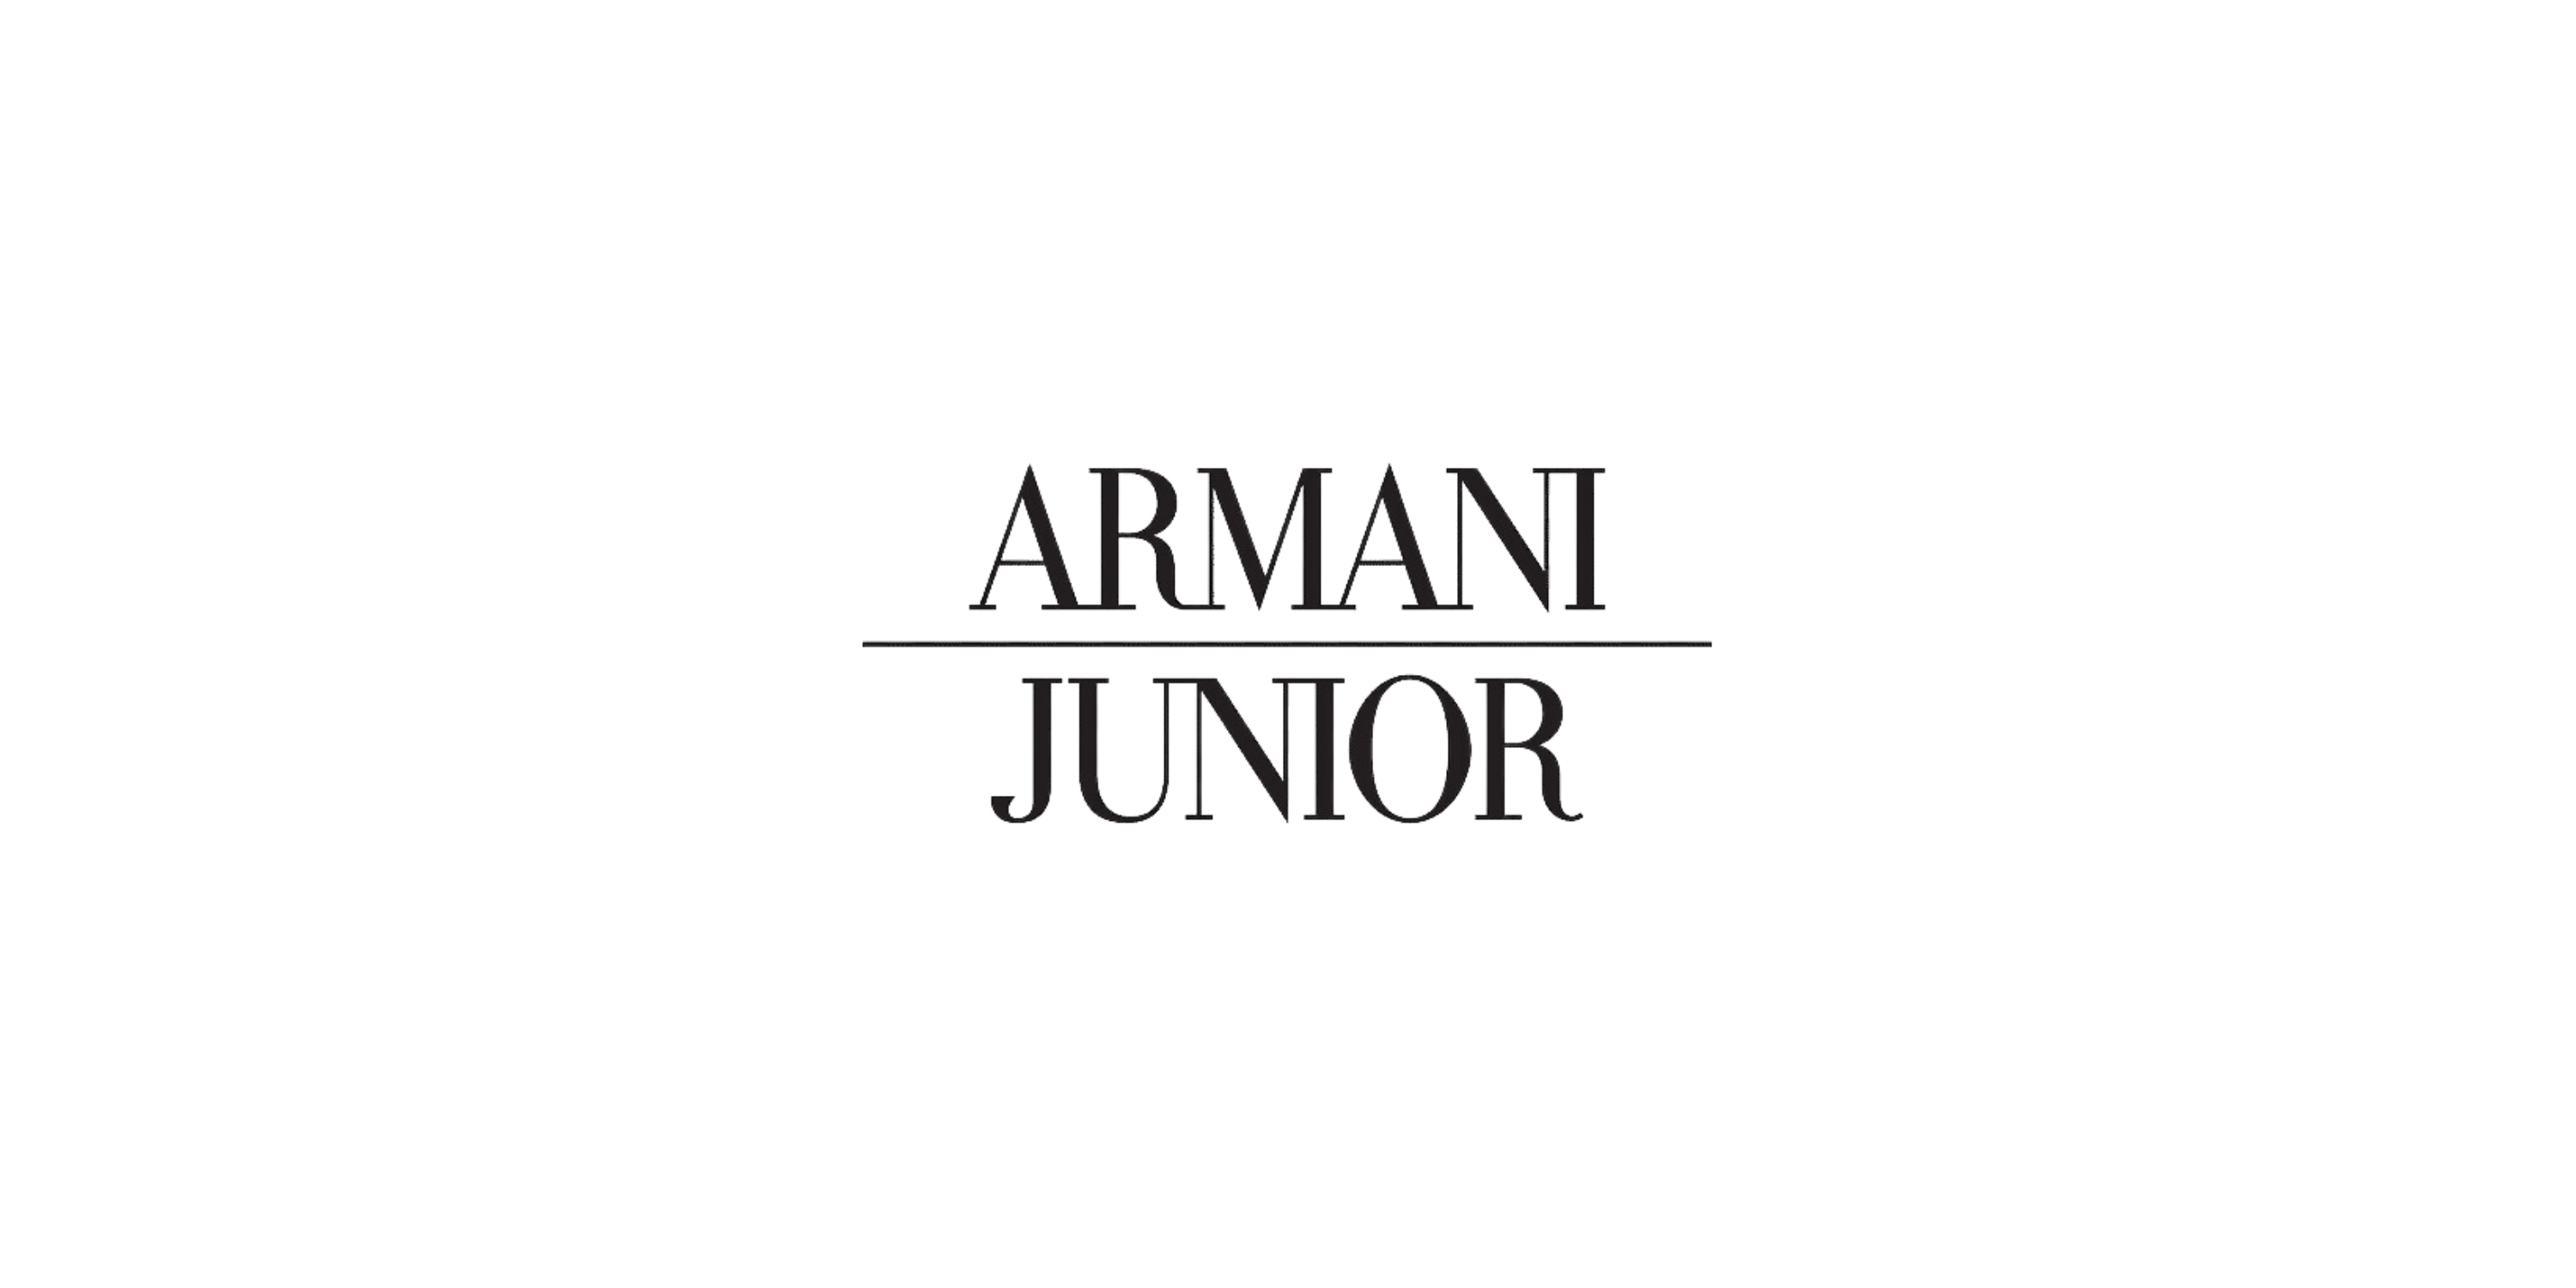 Luxury kids - brand: Armani junior